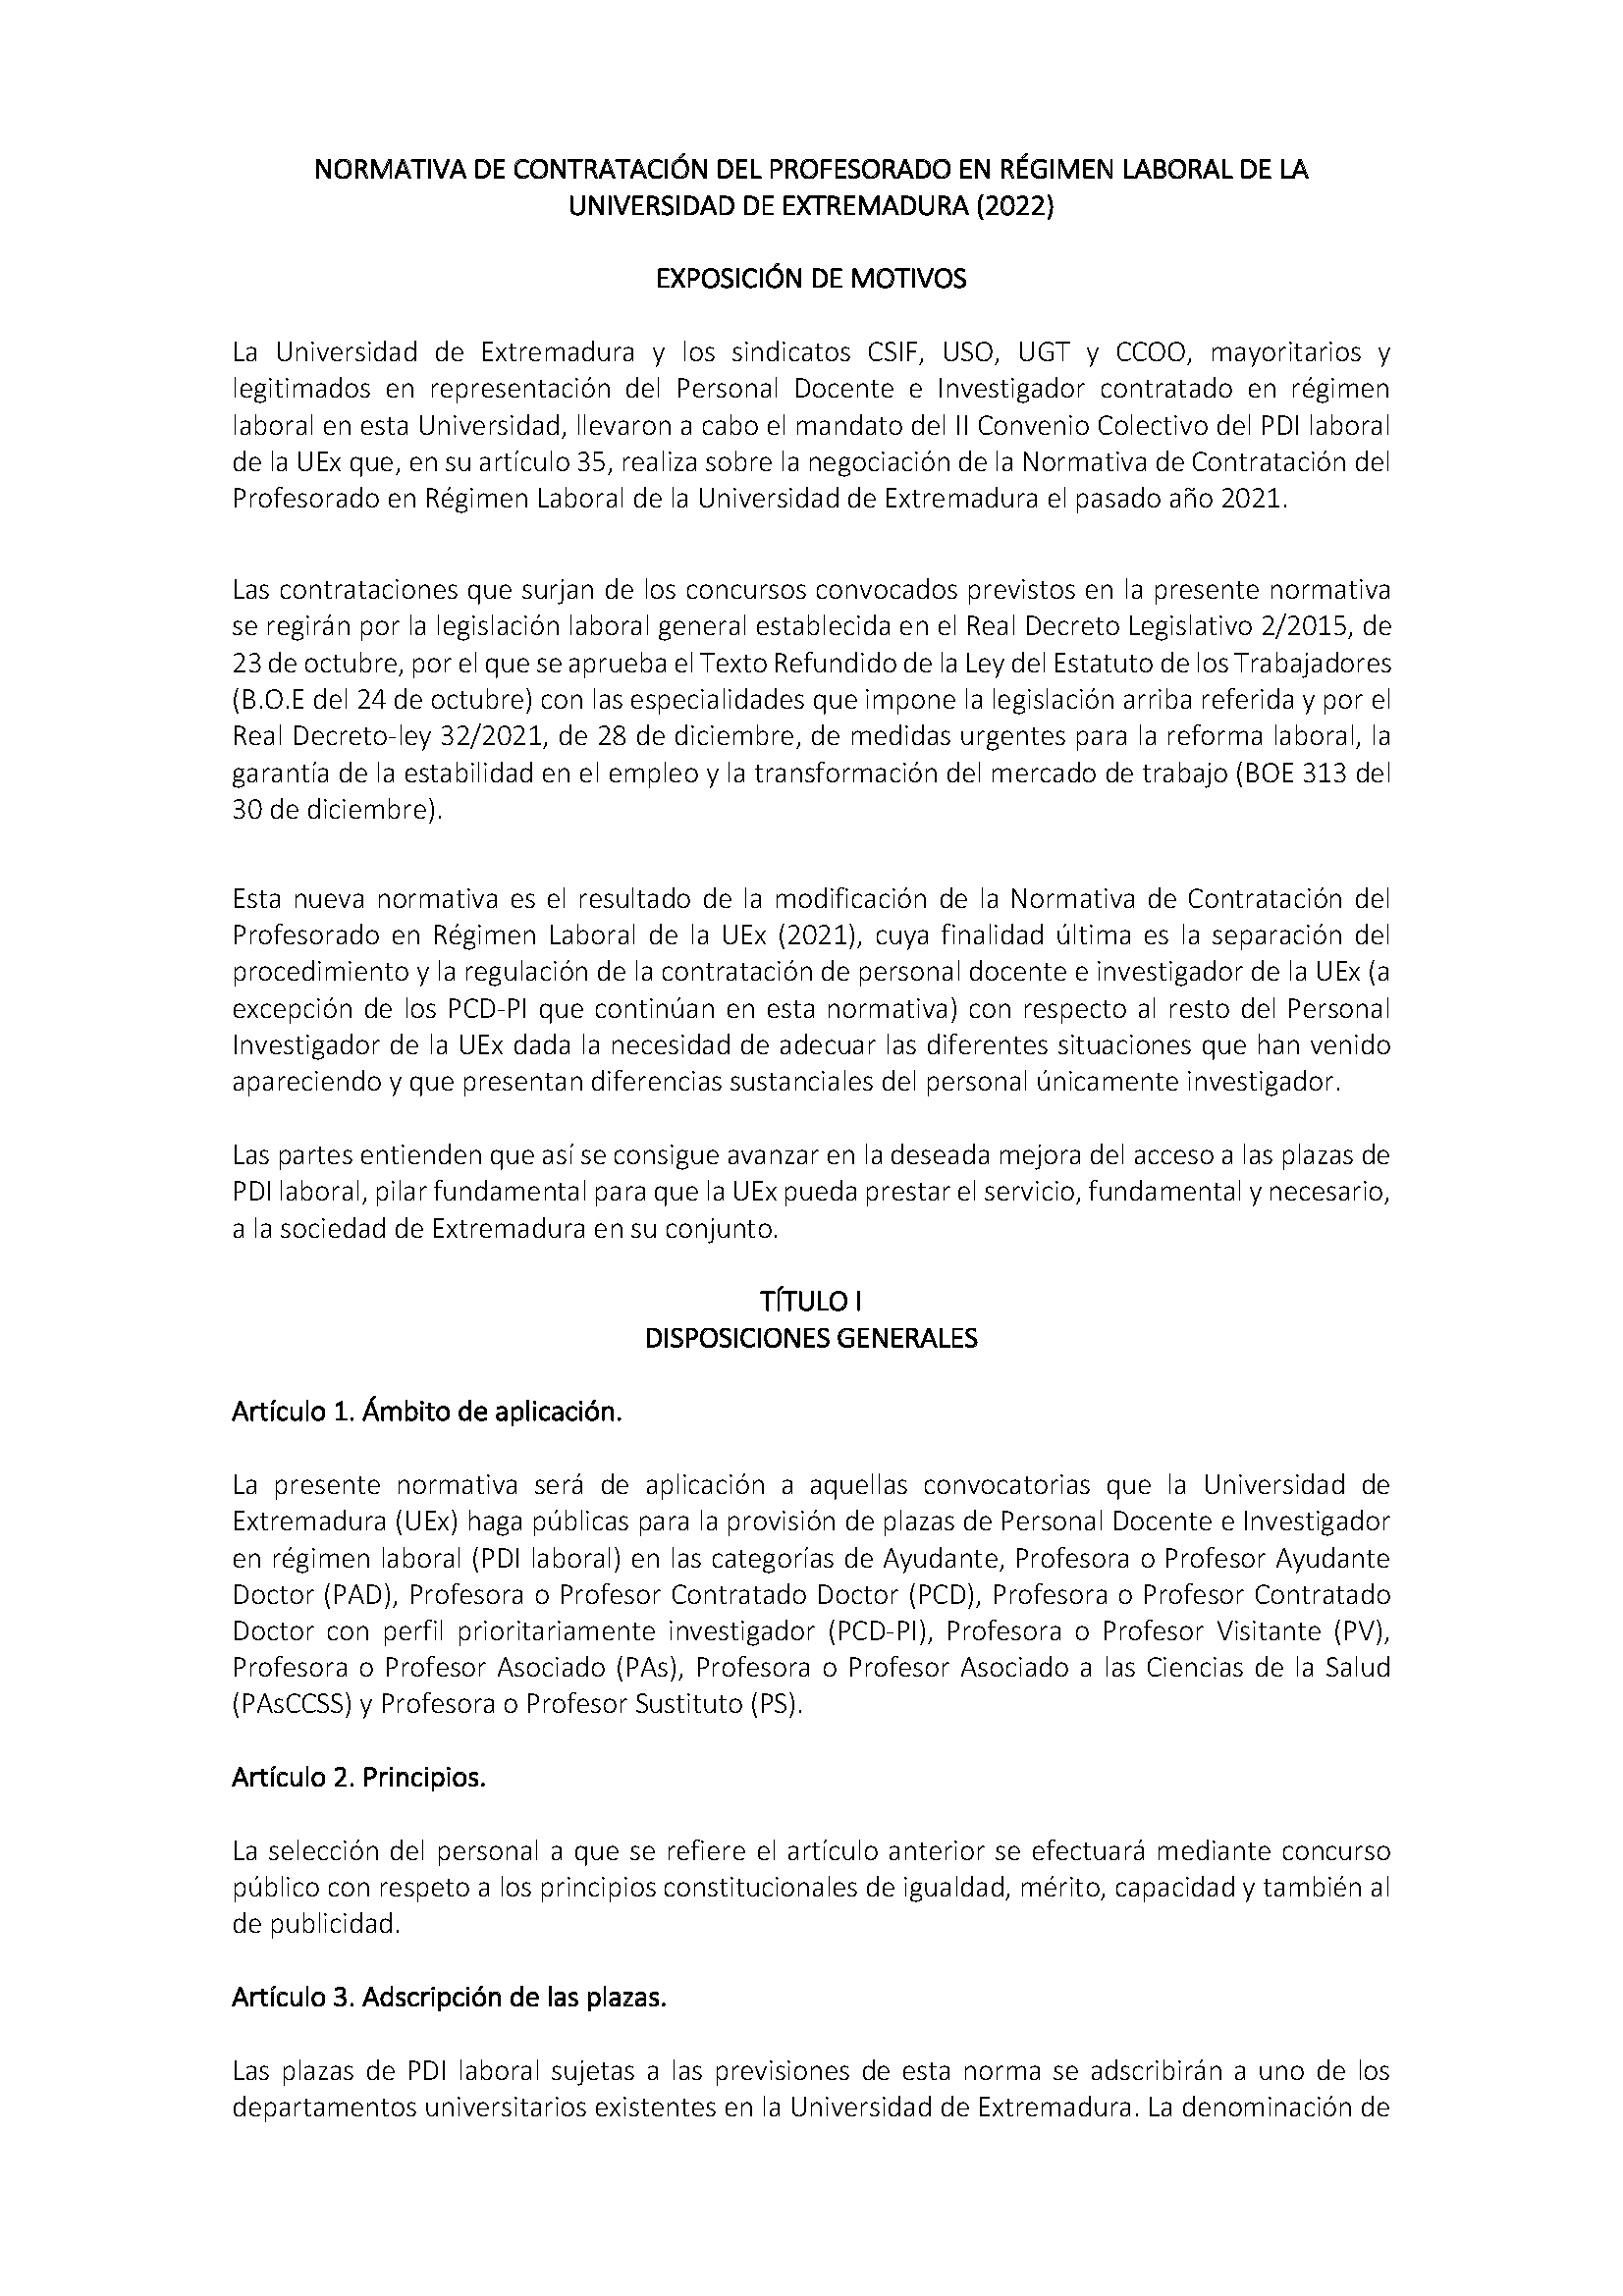 NORMATIVA DE CONTRATACION DEL PROFESORADO EN REGIMEN LABORAL DE LA UNIVERSIDAD DE EXTREMADURA (2022) Pag 1